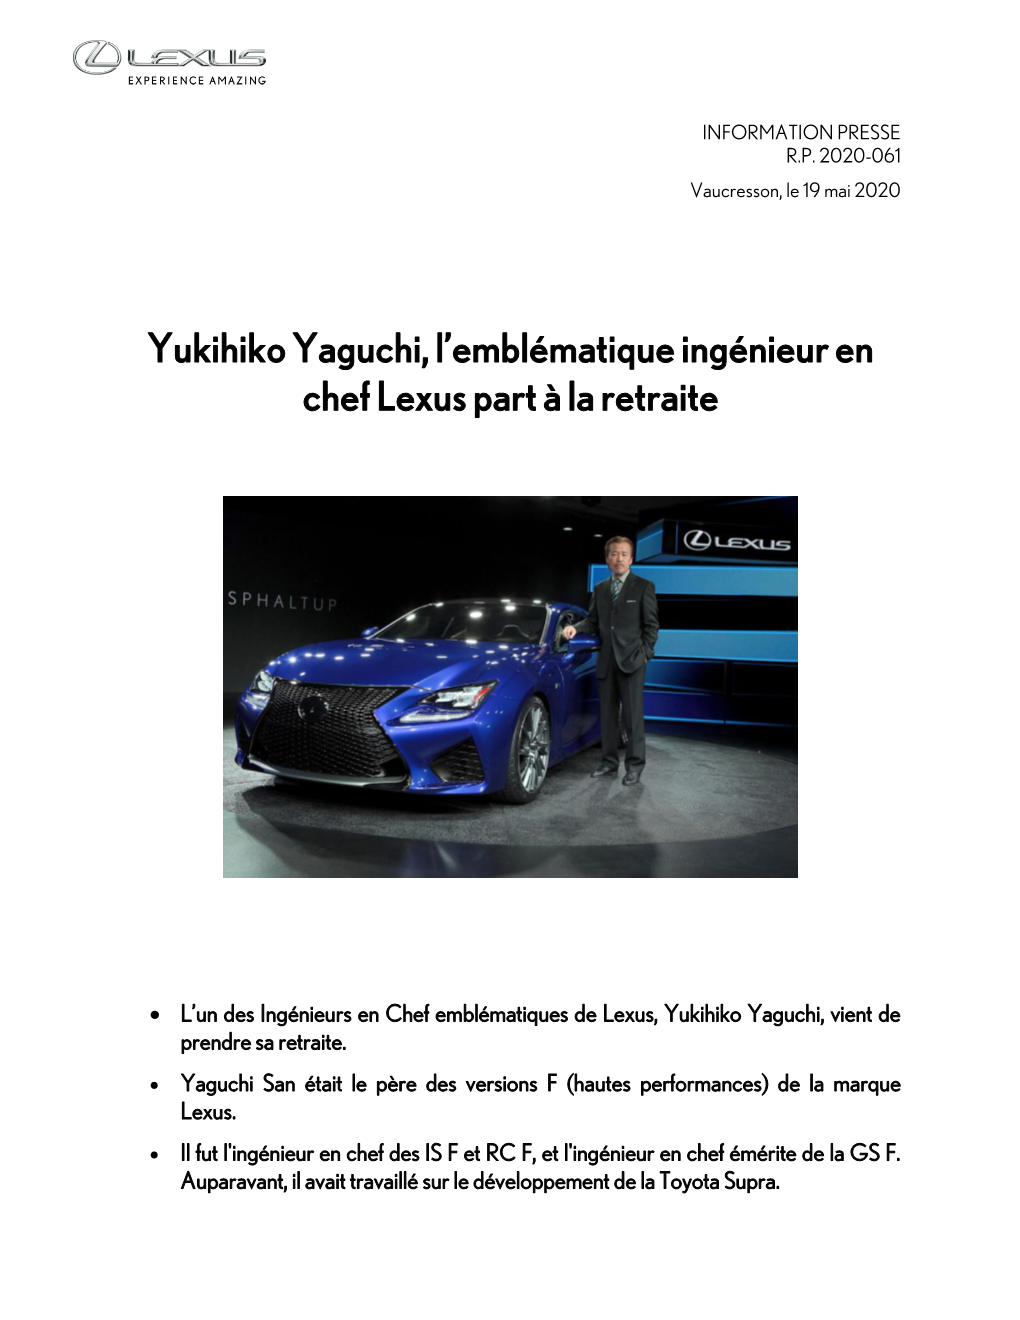 Yukihiko Yaguchi, L'emblématique Ingénieur En Chef Lexus Part À La